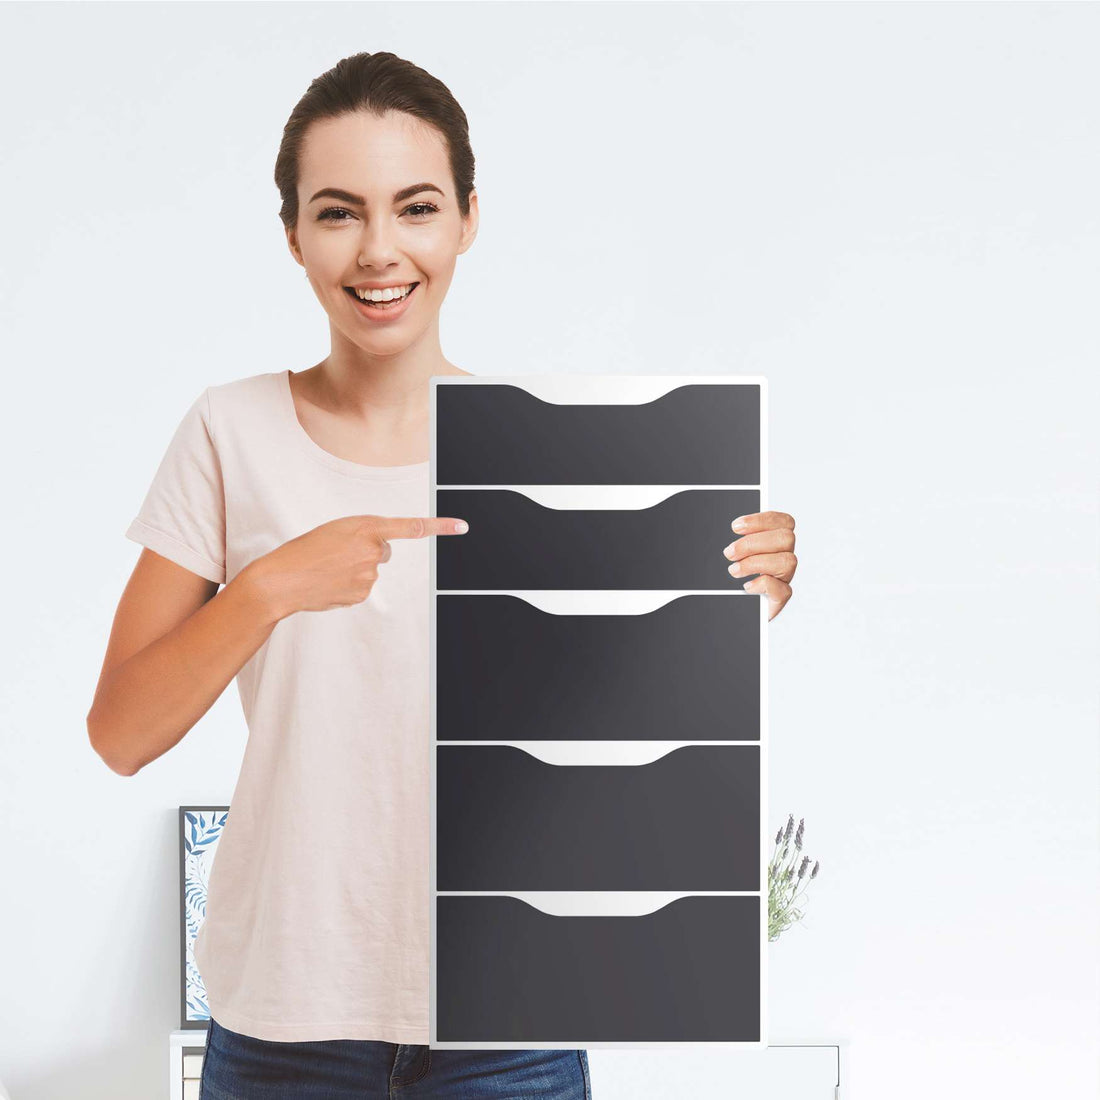 Klebefolie für Möbel Grau Dark - IKEA Alex 5 Schubladen - Folie